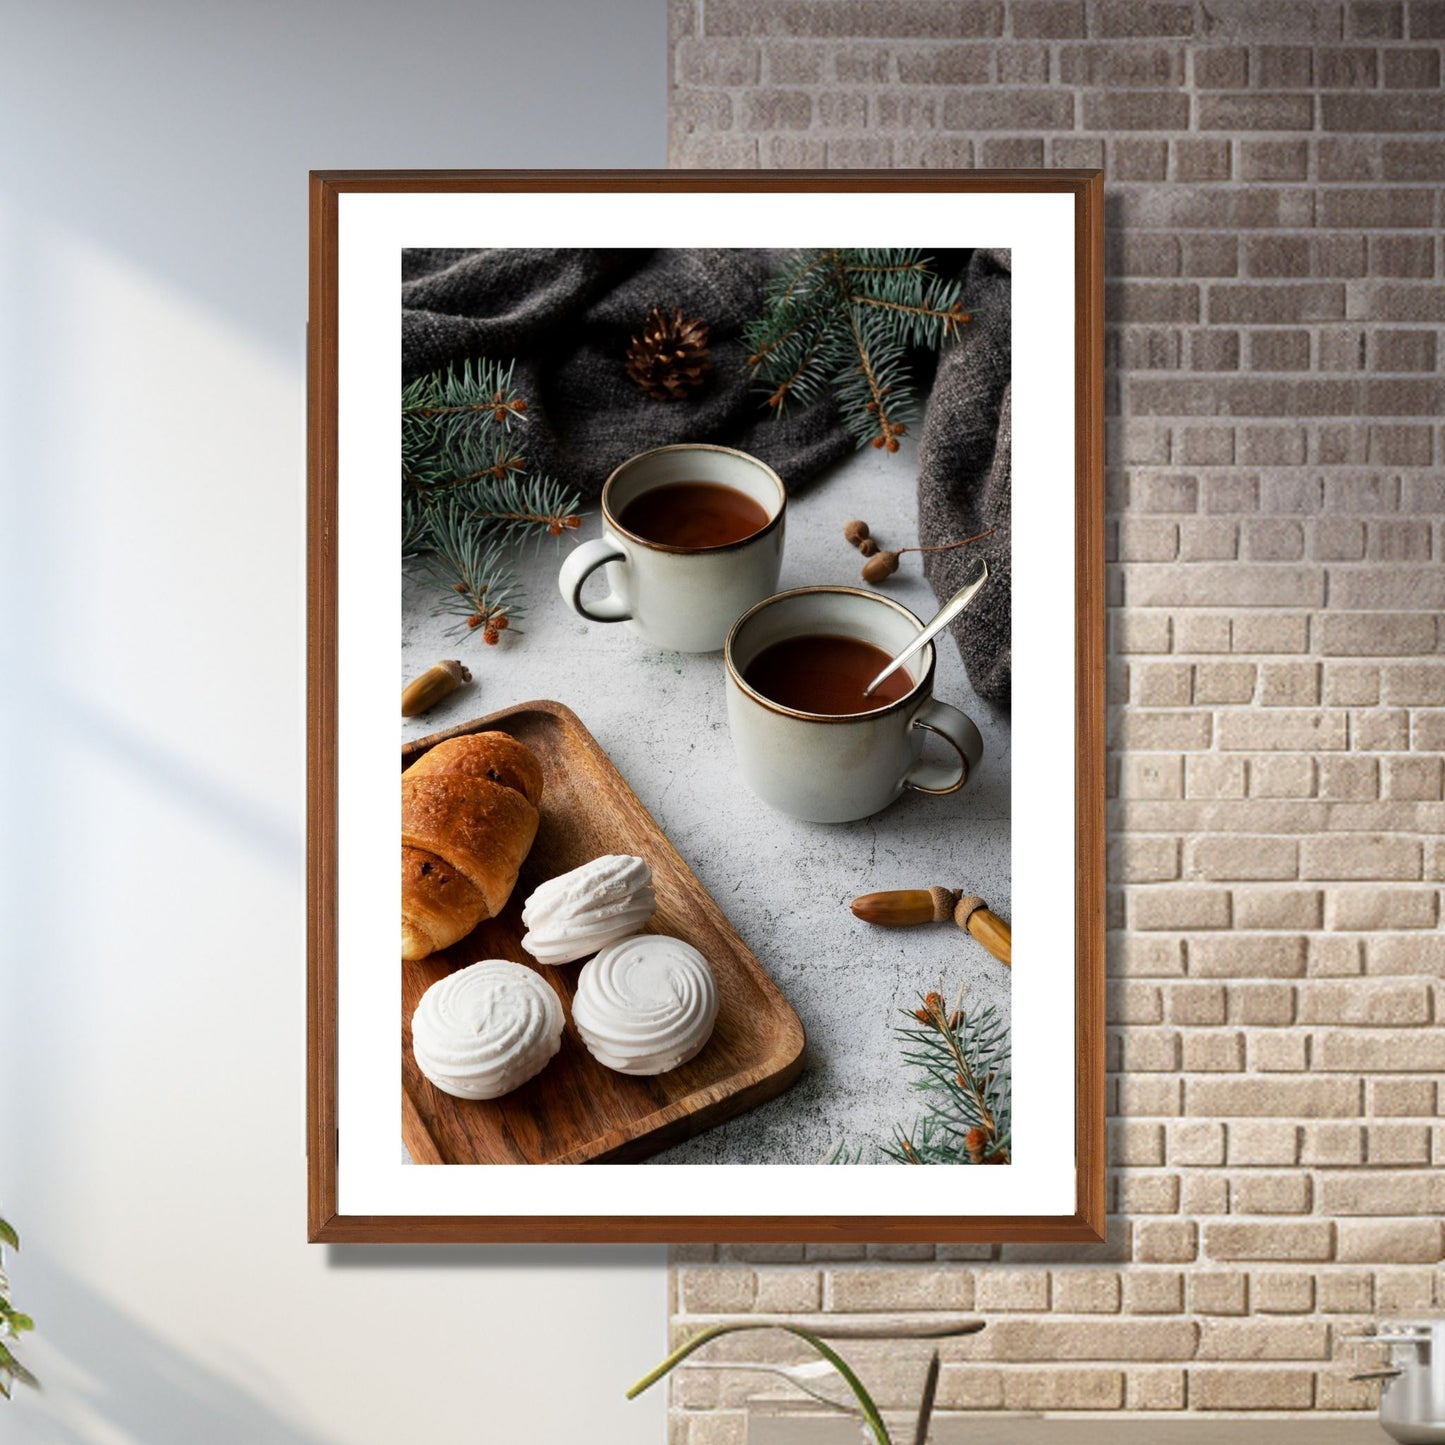 Plakat med dekorativt julemotiv av to kaffekopper og noe søtt til kaffen. Illustrasjon av plakat i eikeramme som henger på en vegg.